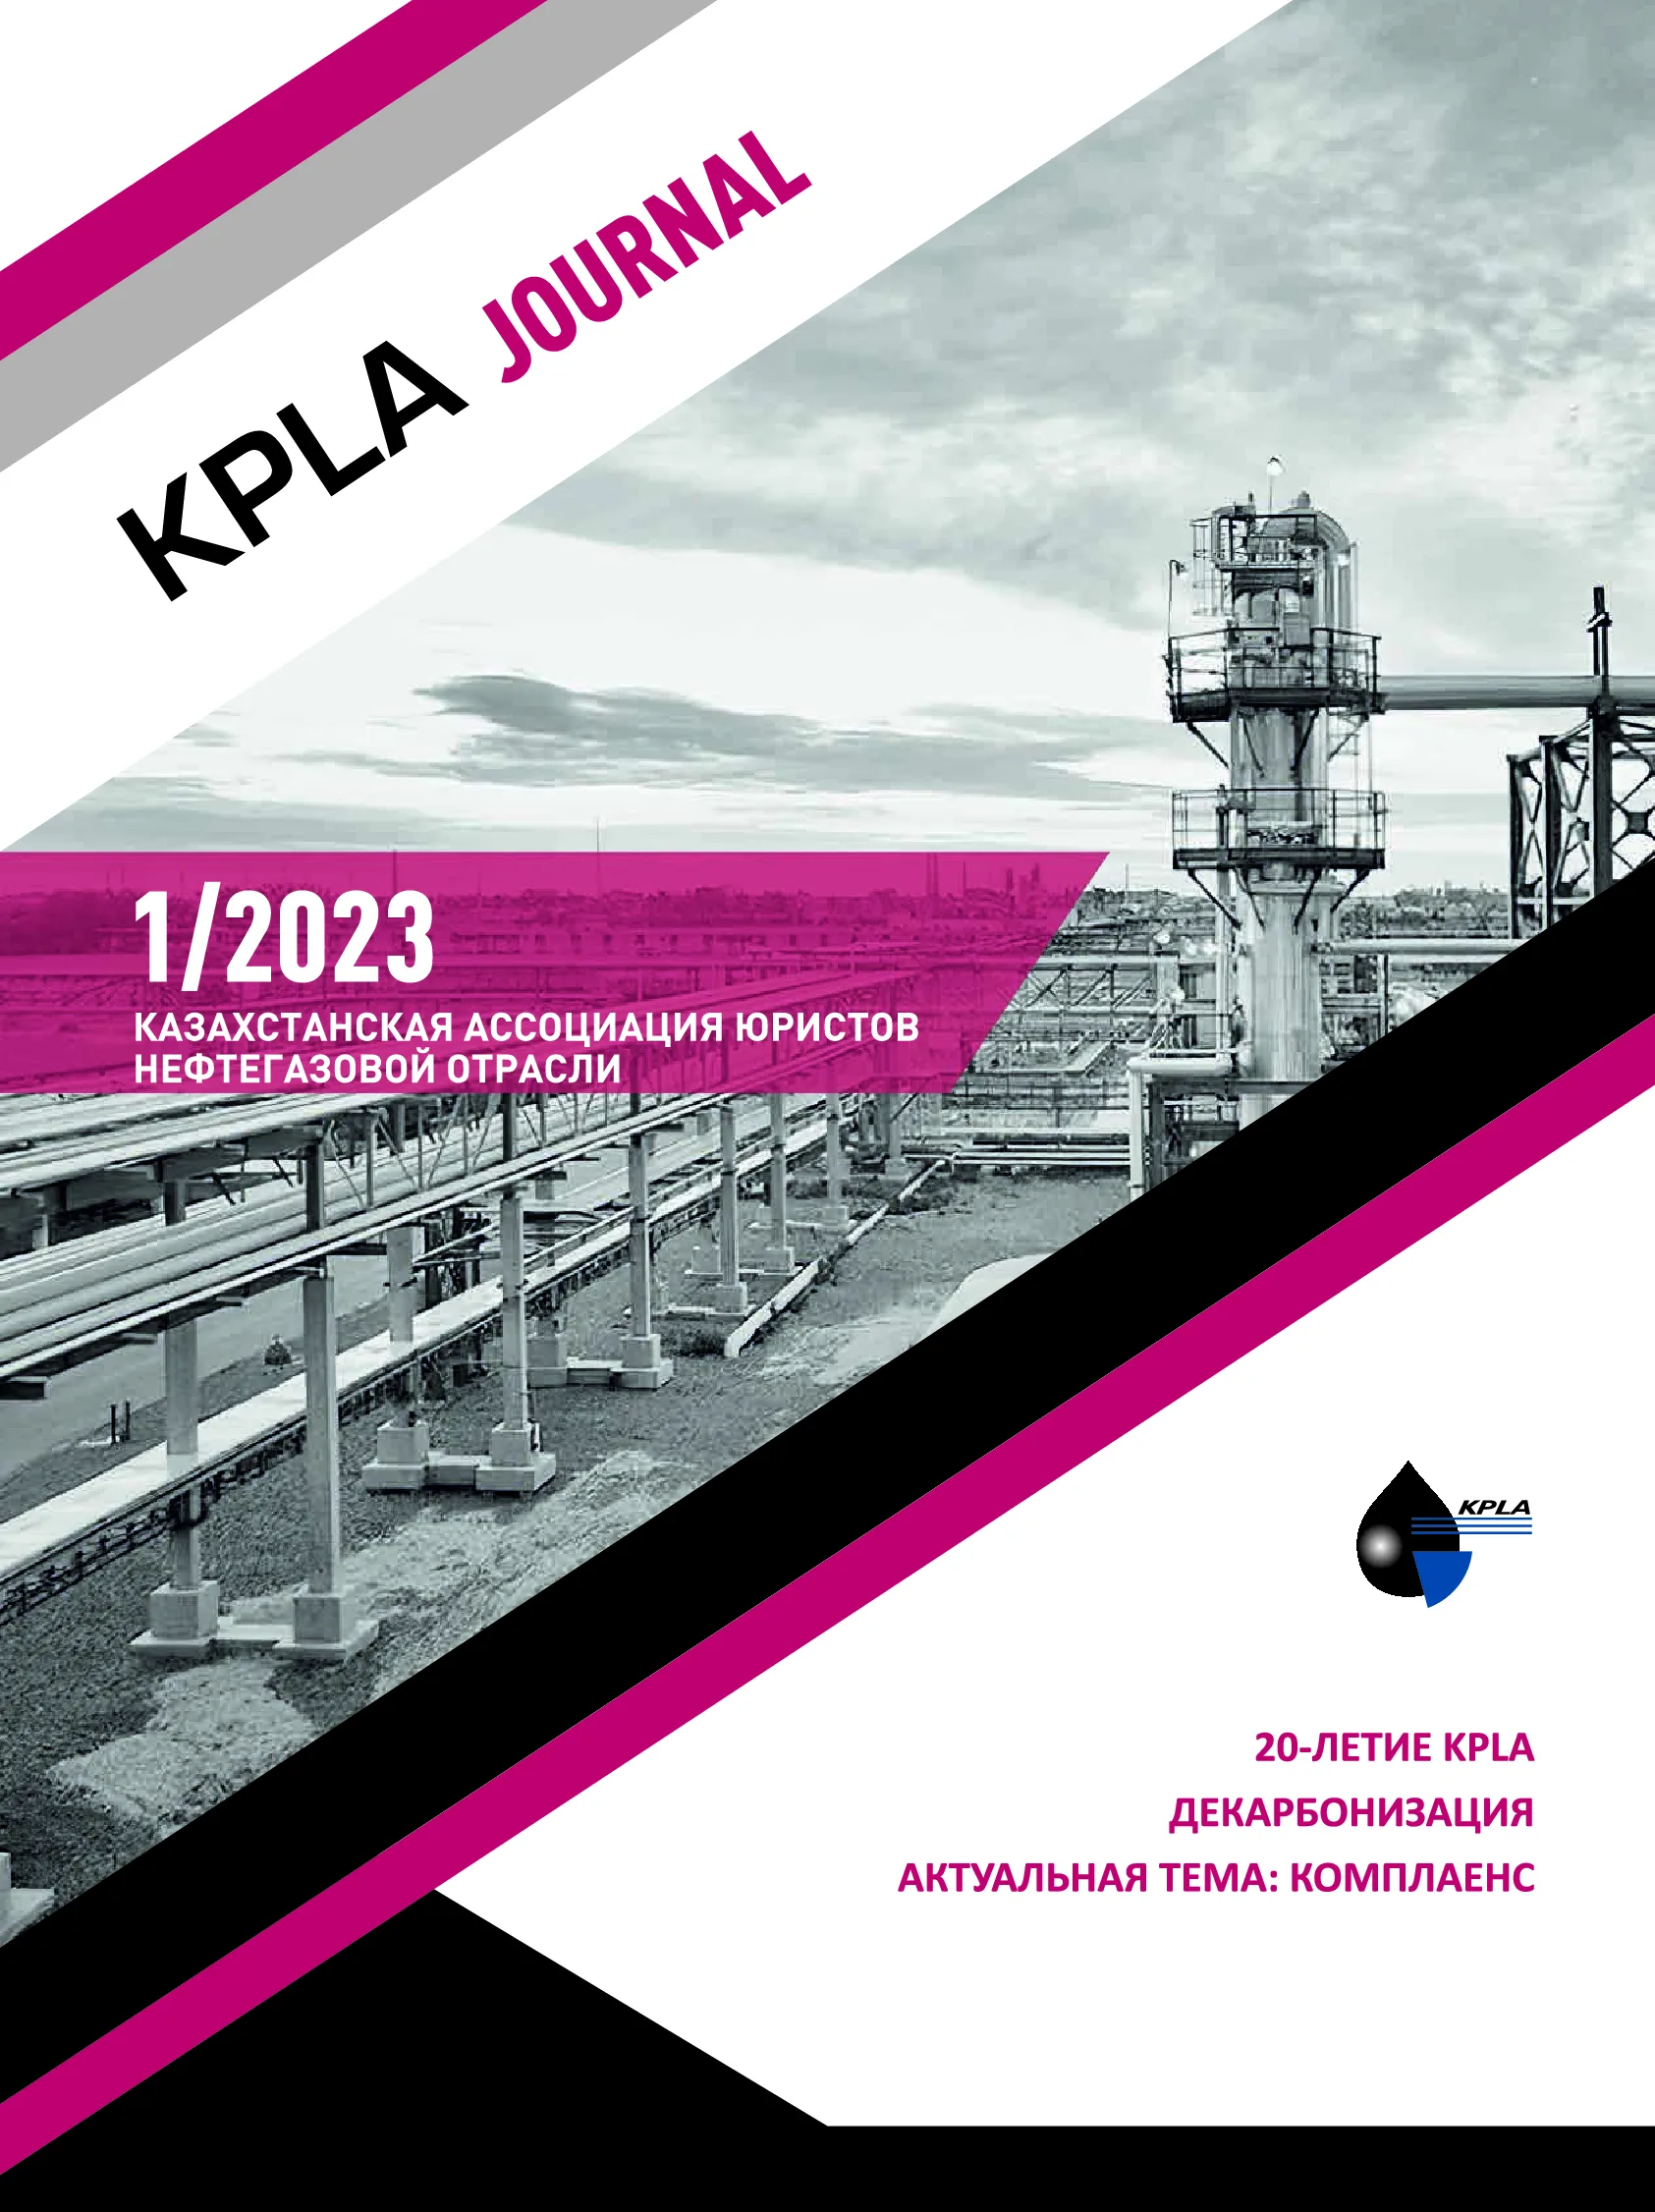 Вы сейчас просматриваете KPLA journal 1-2023 RUS